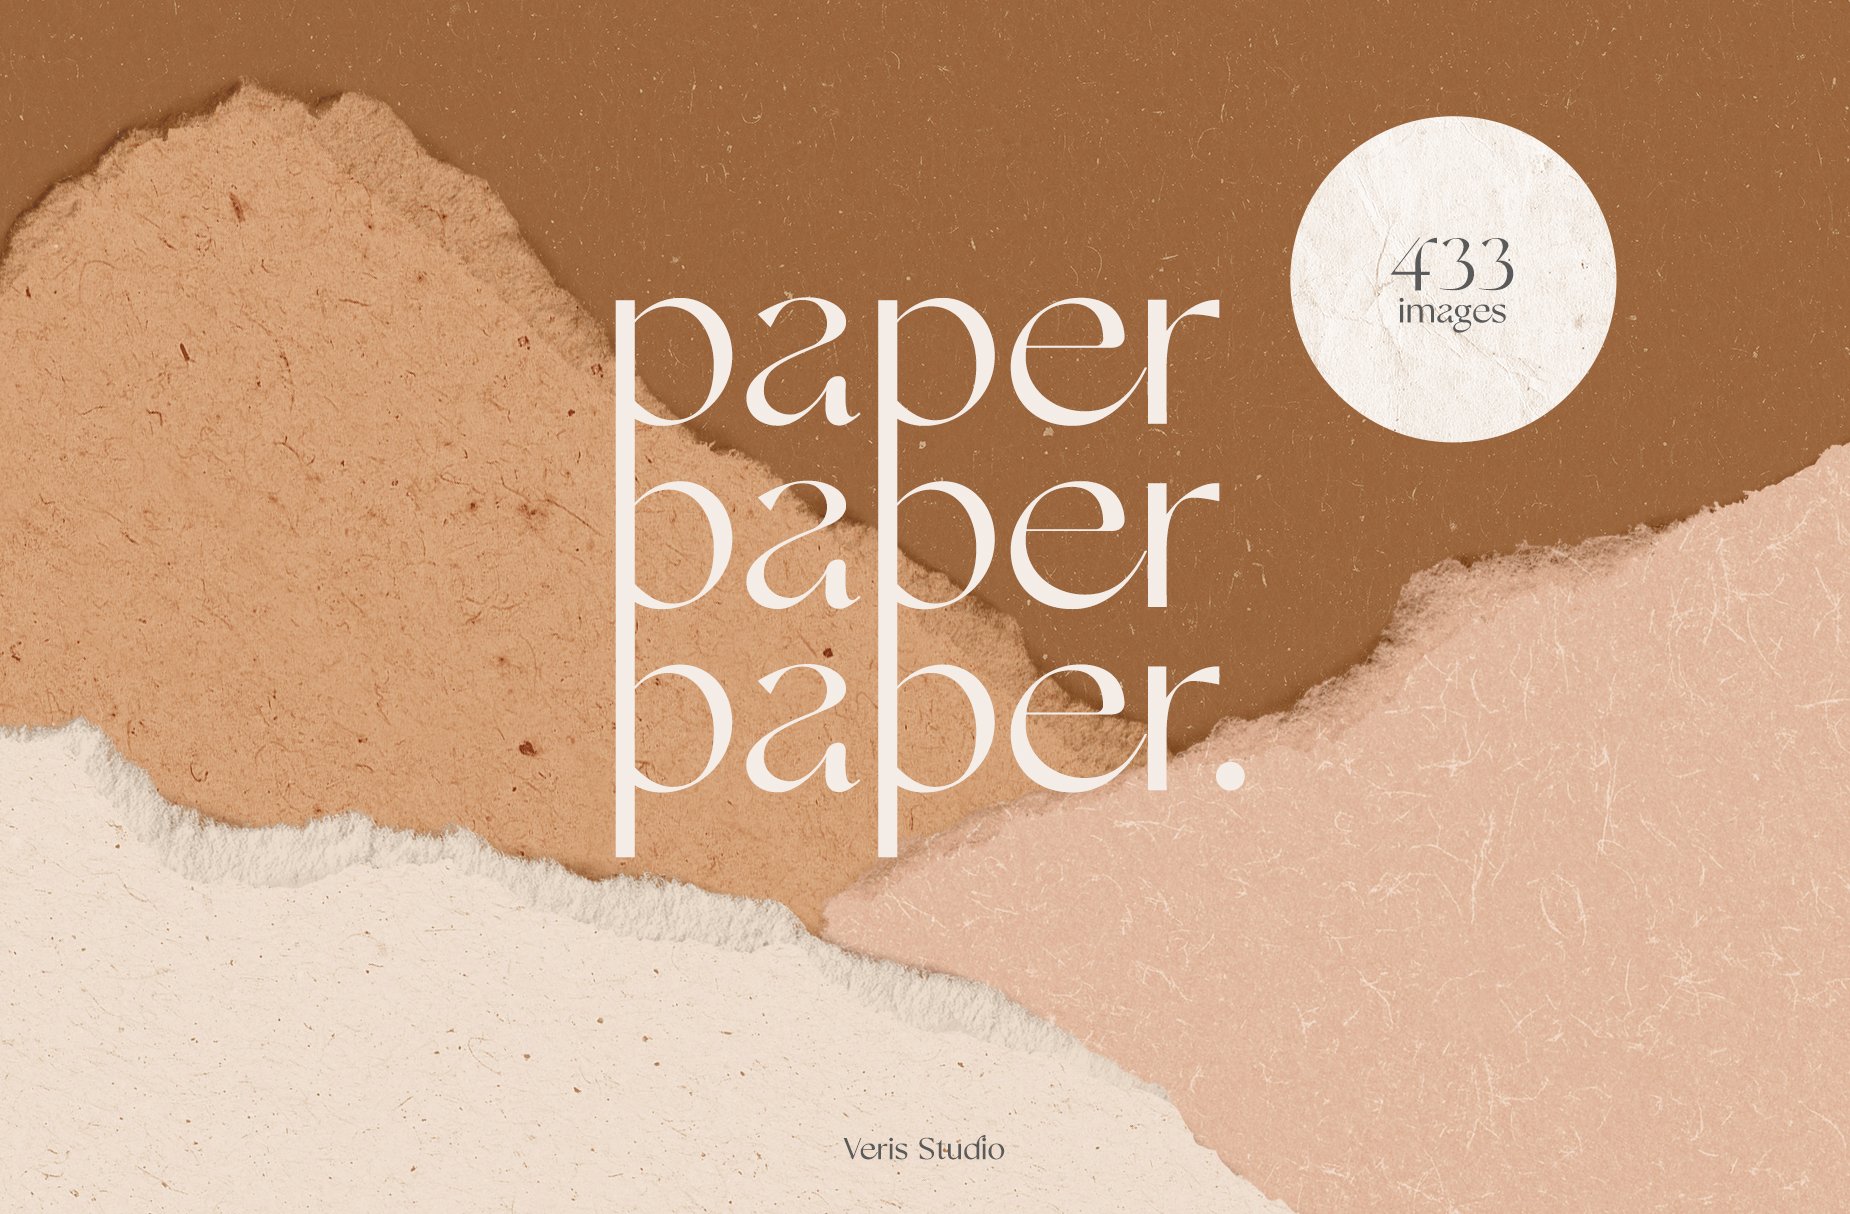 50-paper-textures-set-premium